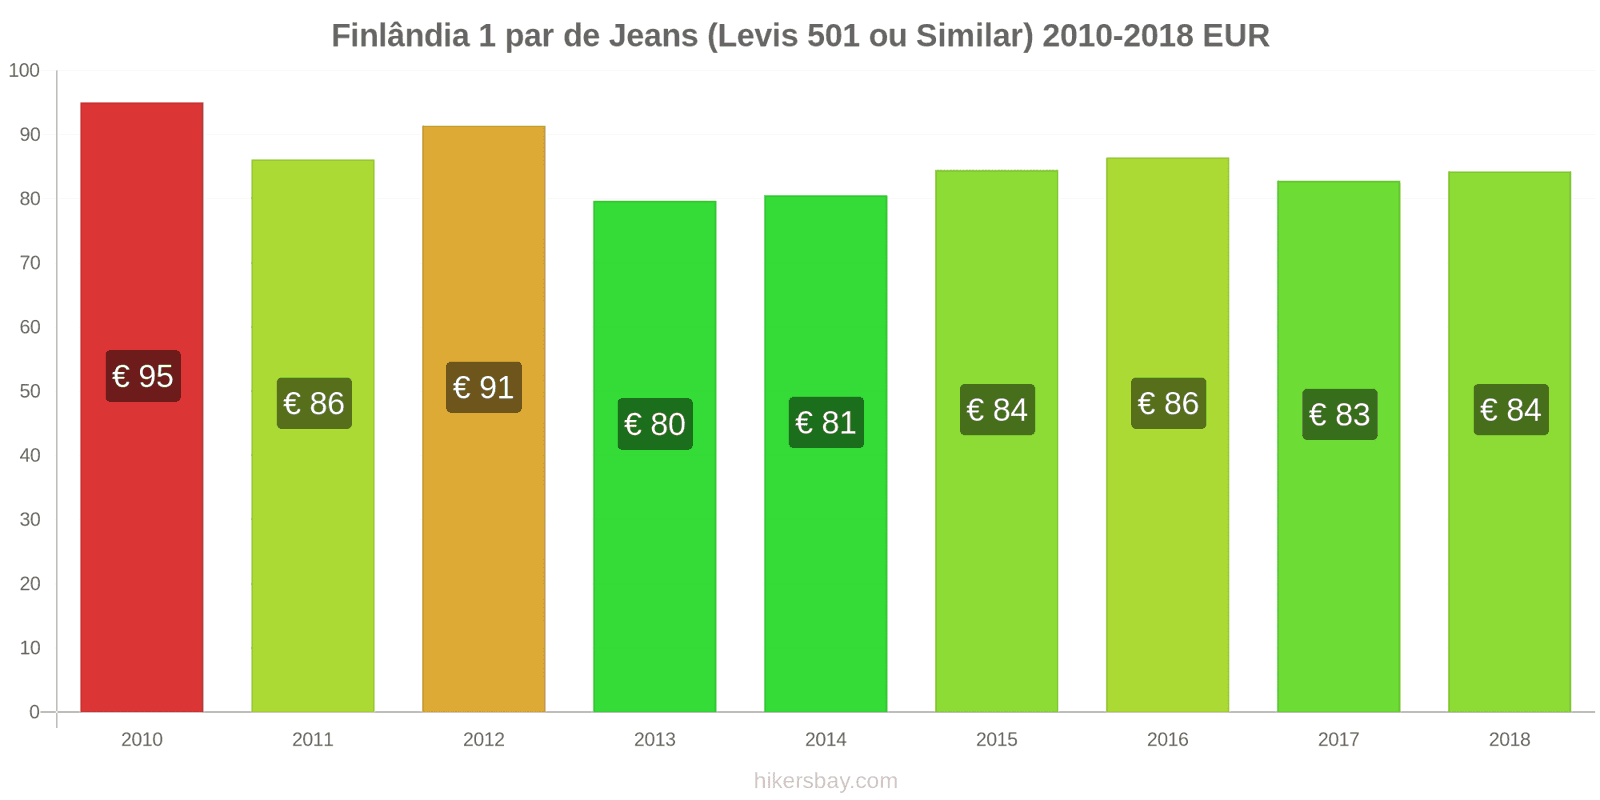 Finlândia mudanças de preços 1 par de jeans (Levis 501 ou similares) hikersbay.com